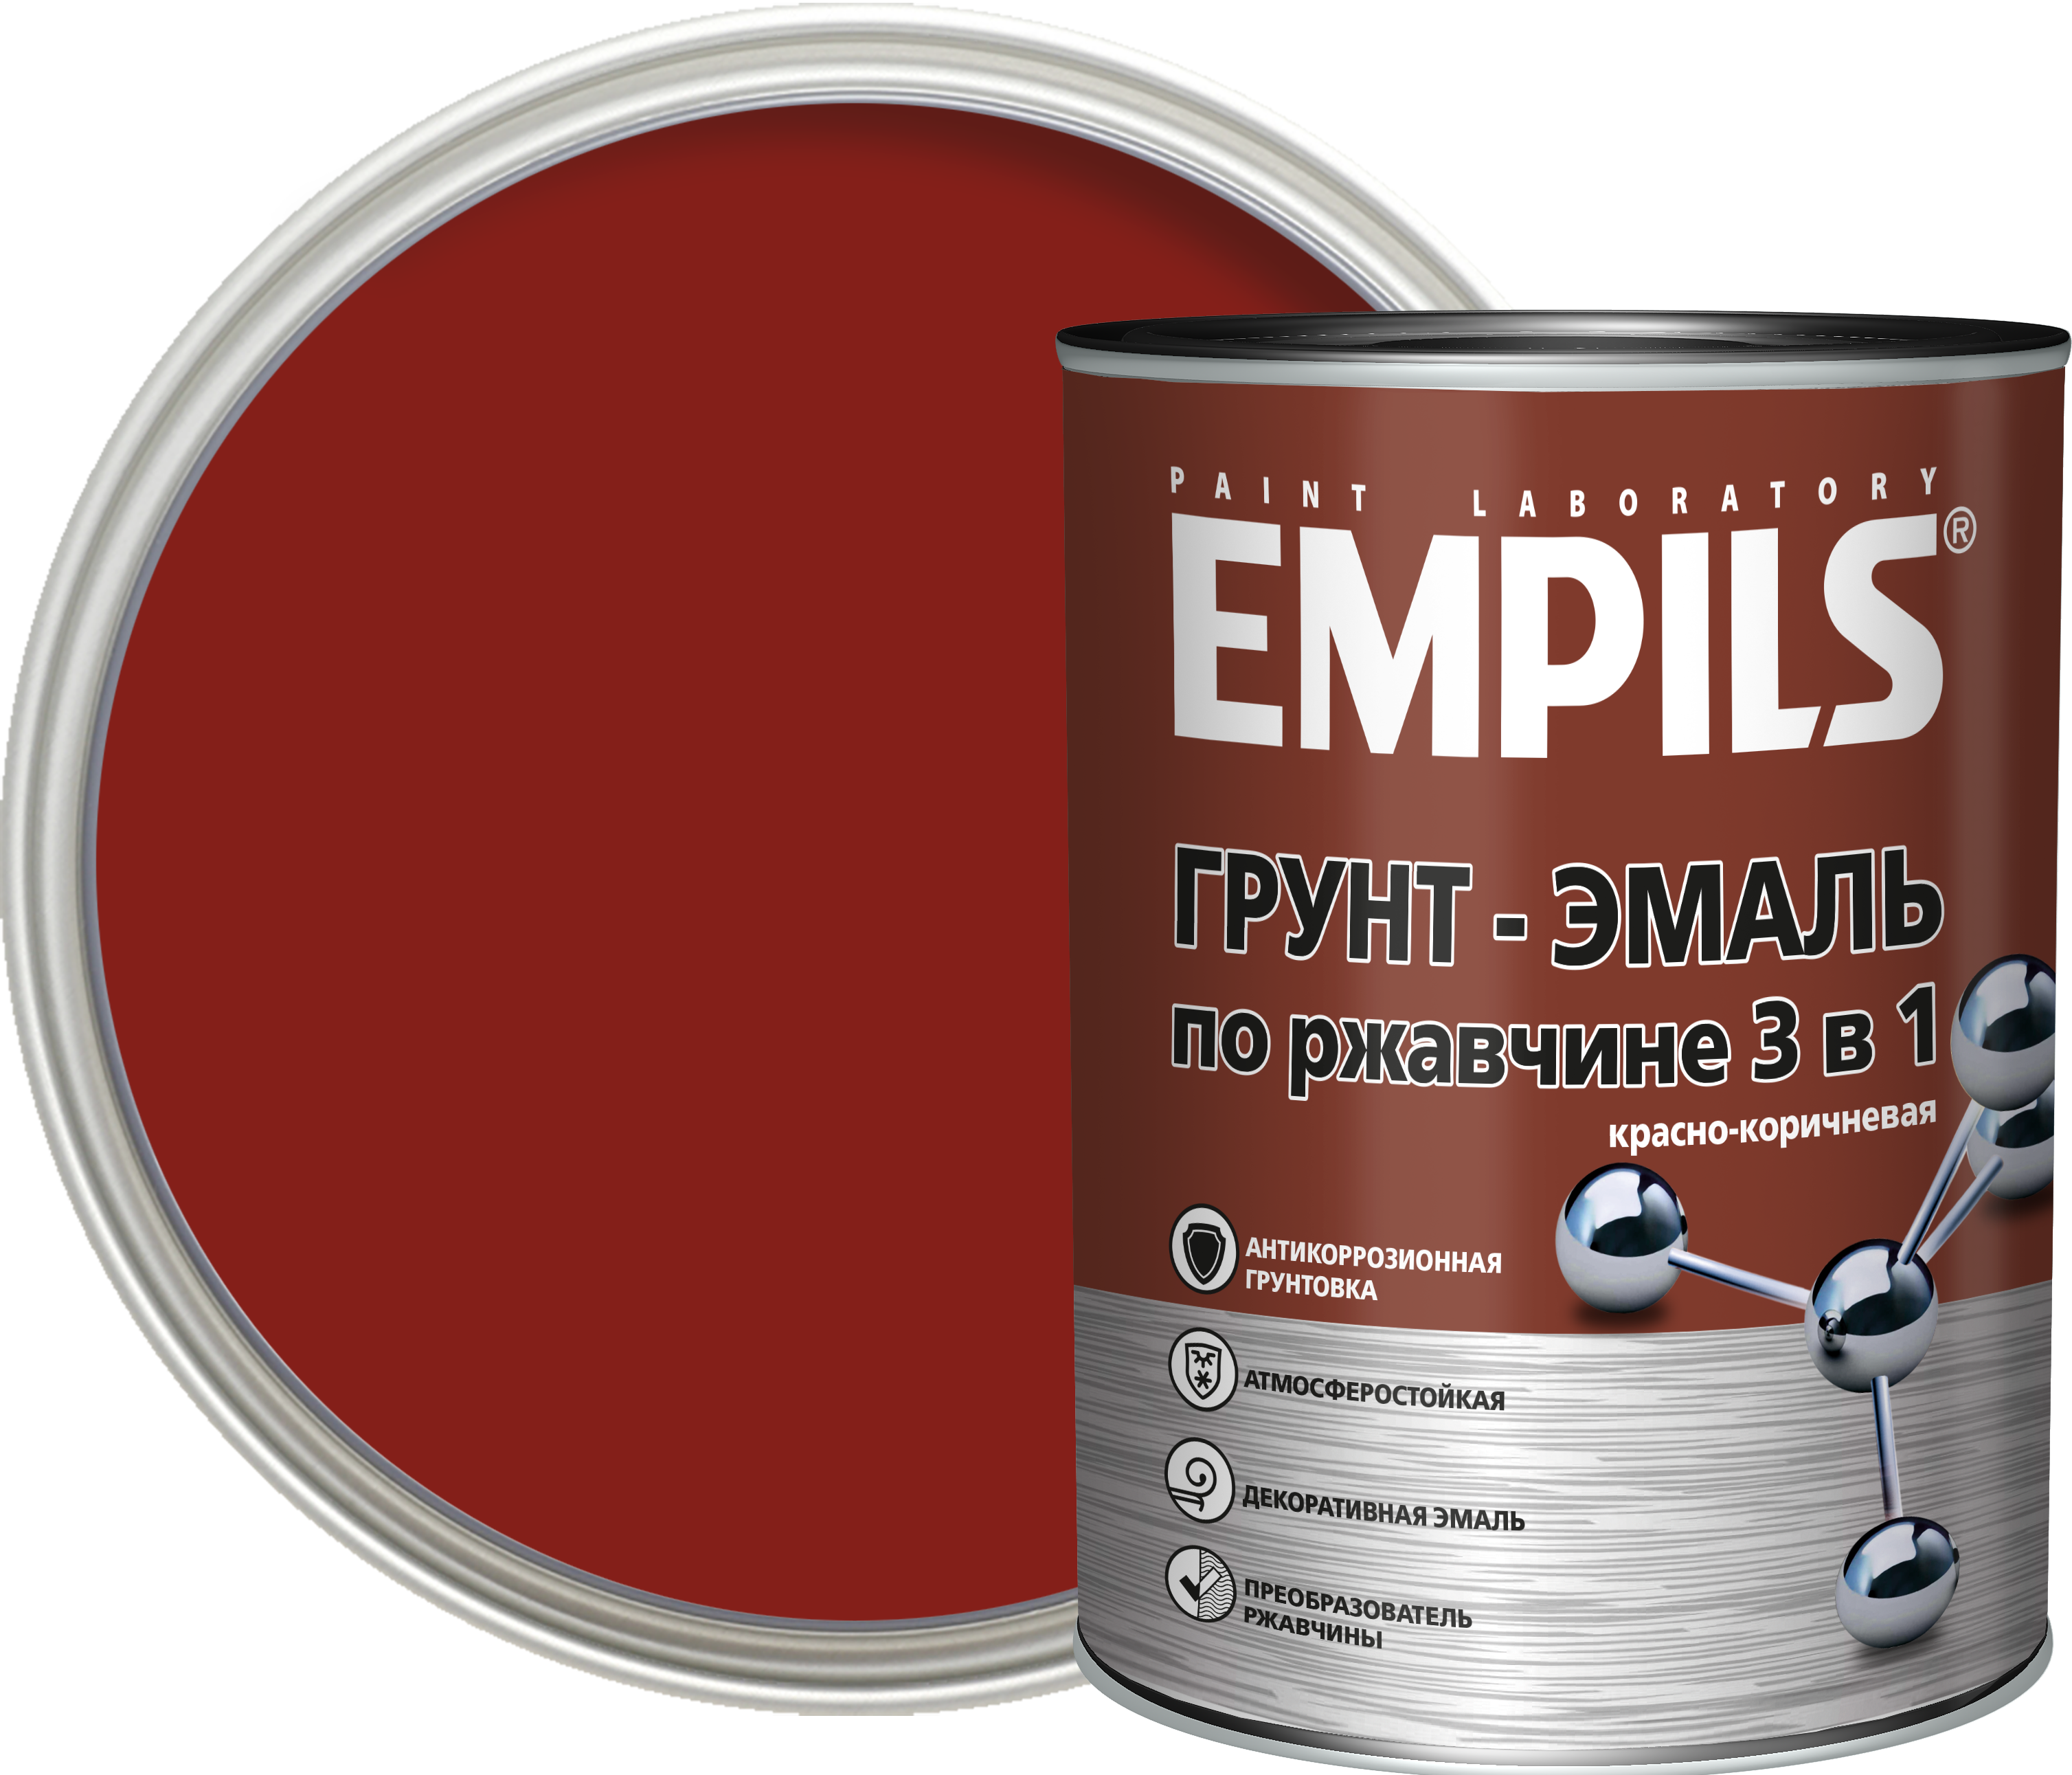 Empils грунт эмаль по ржавчине 3